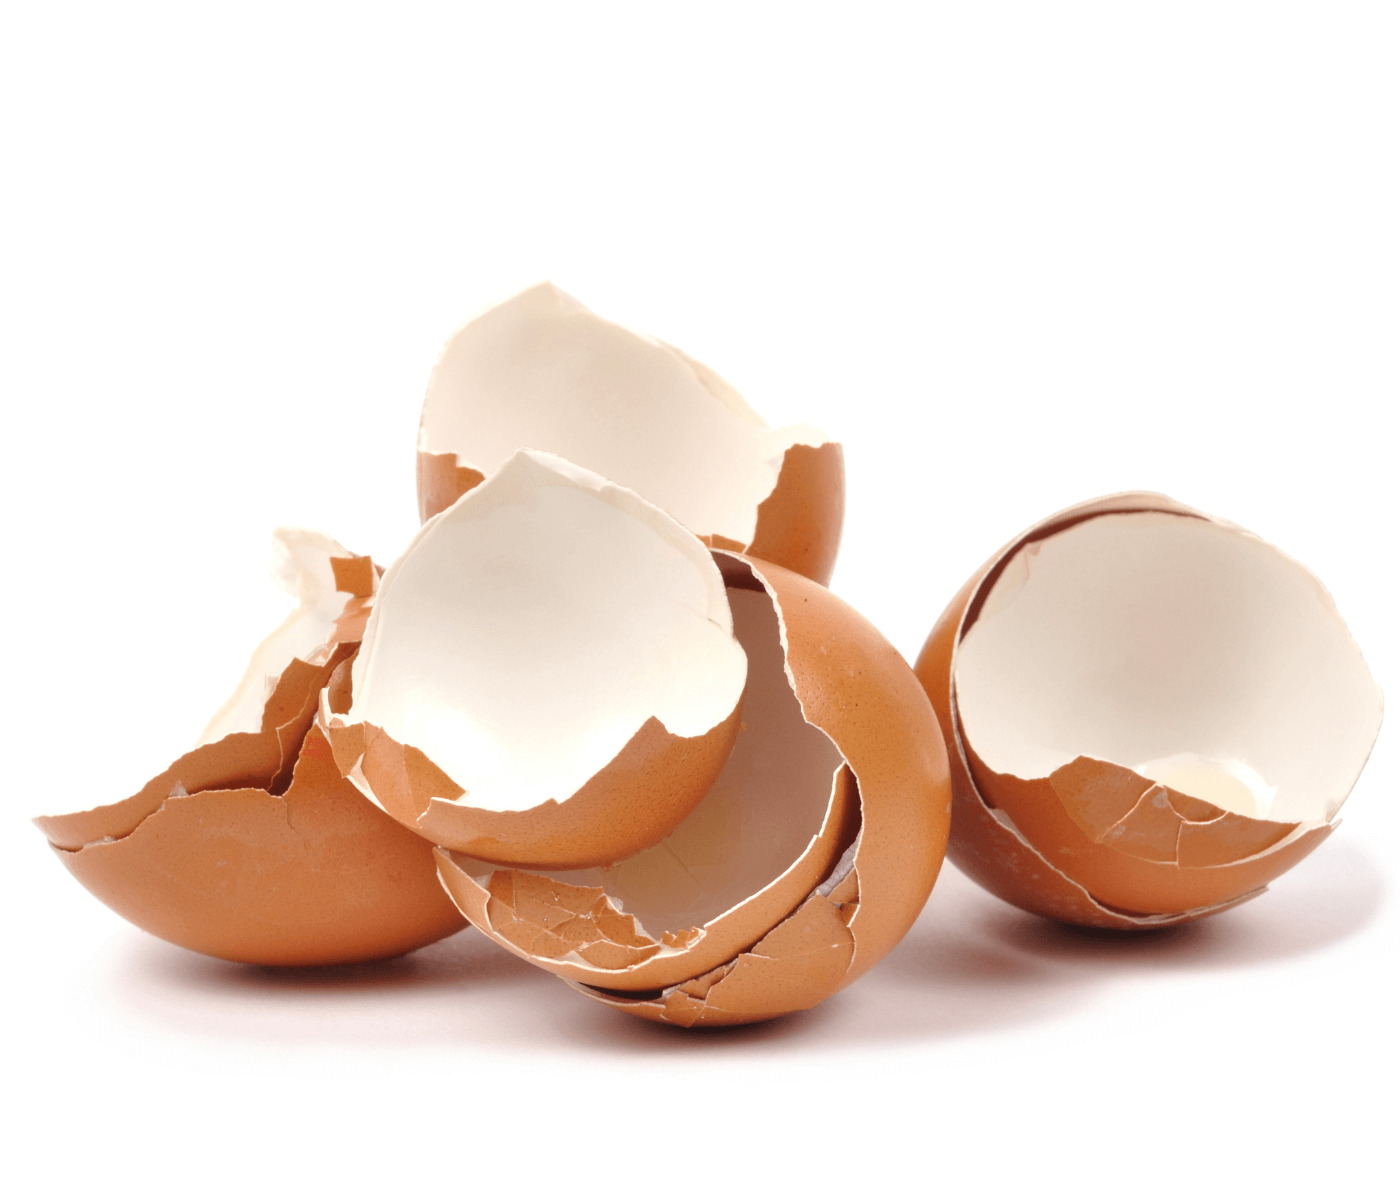 A casca do ovo, sua estrutura, formação & quais fatores afetam sua qualidade